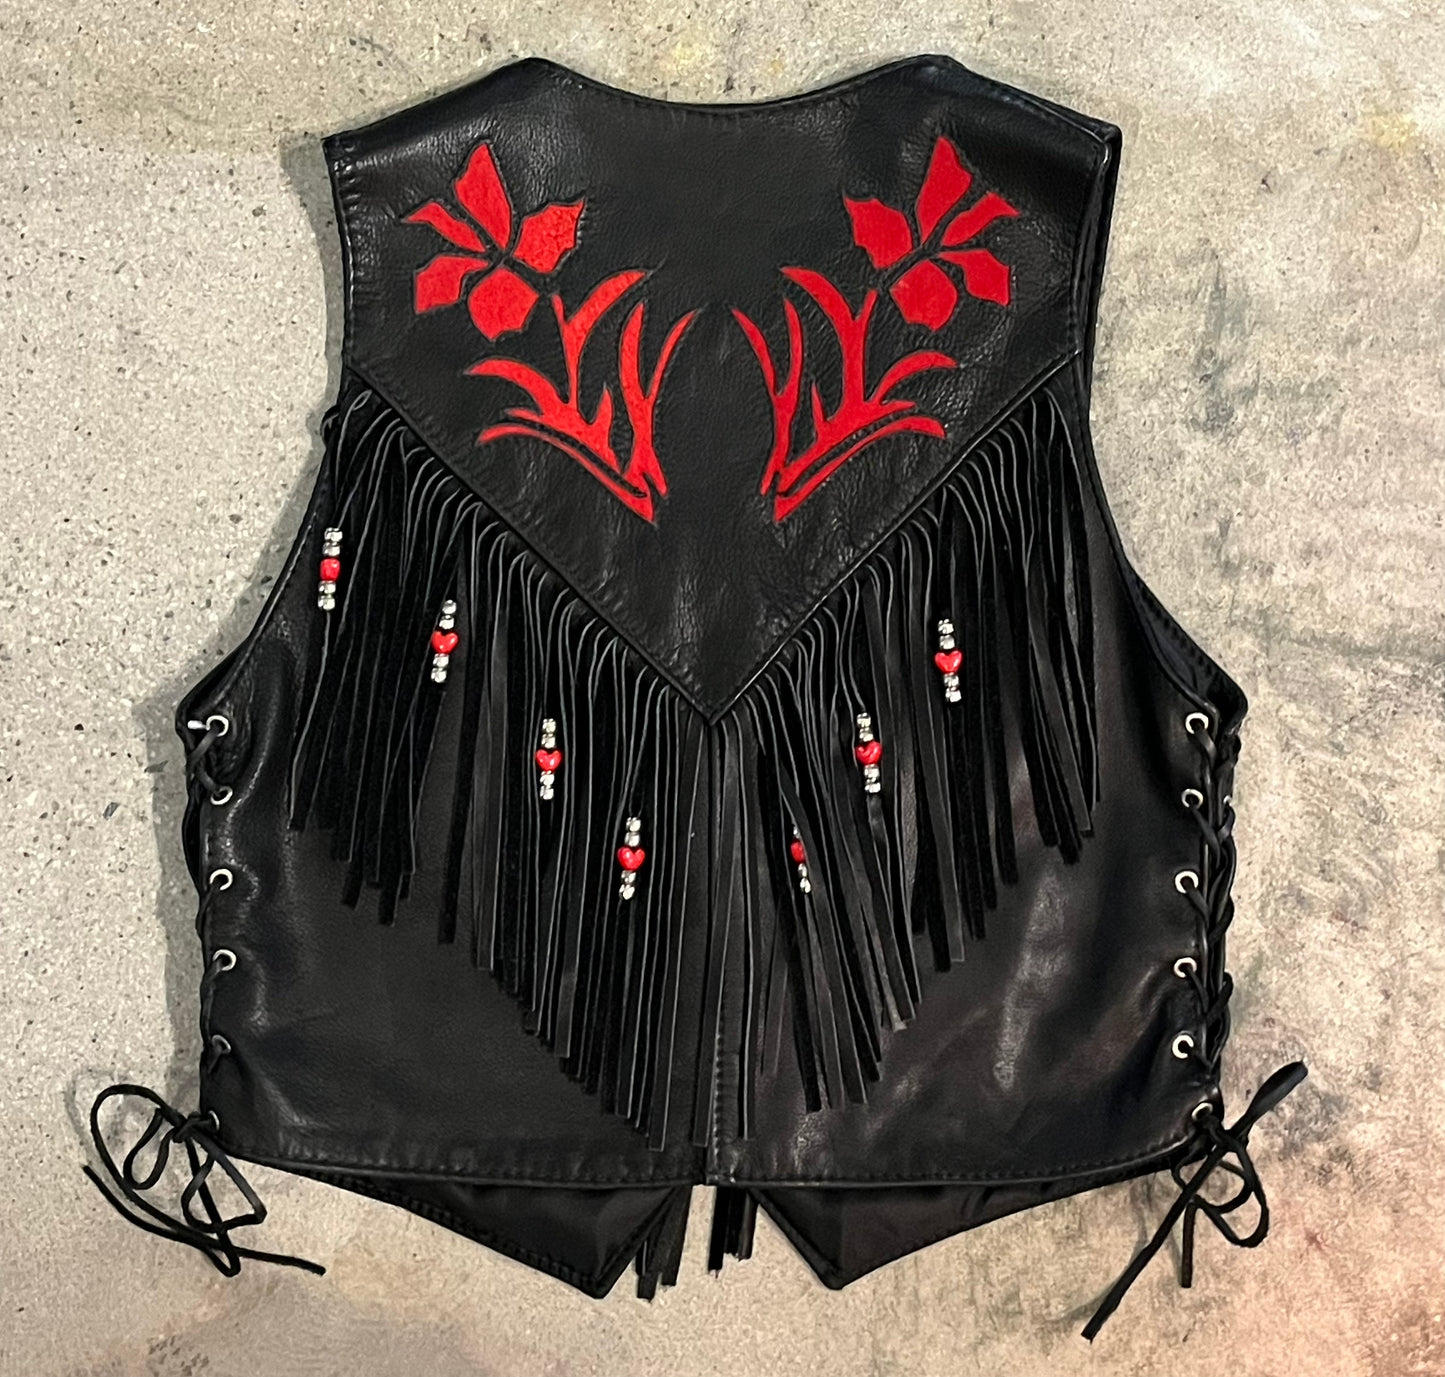 Black & Red Leather Western Vest w Fringe